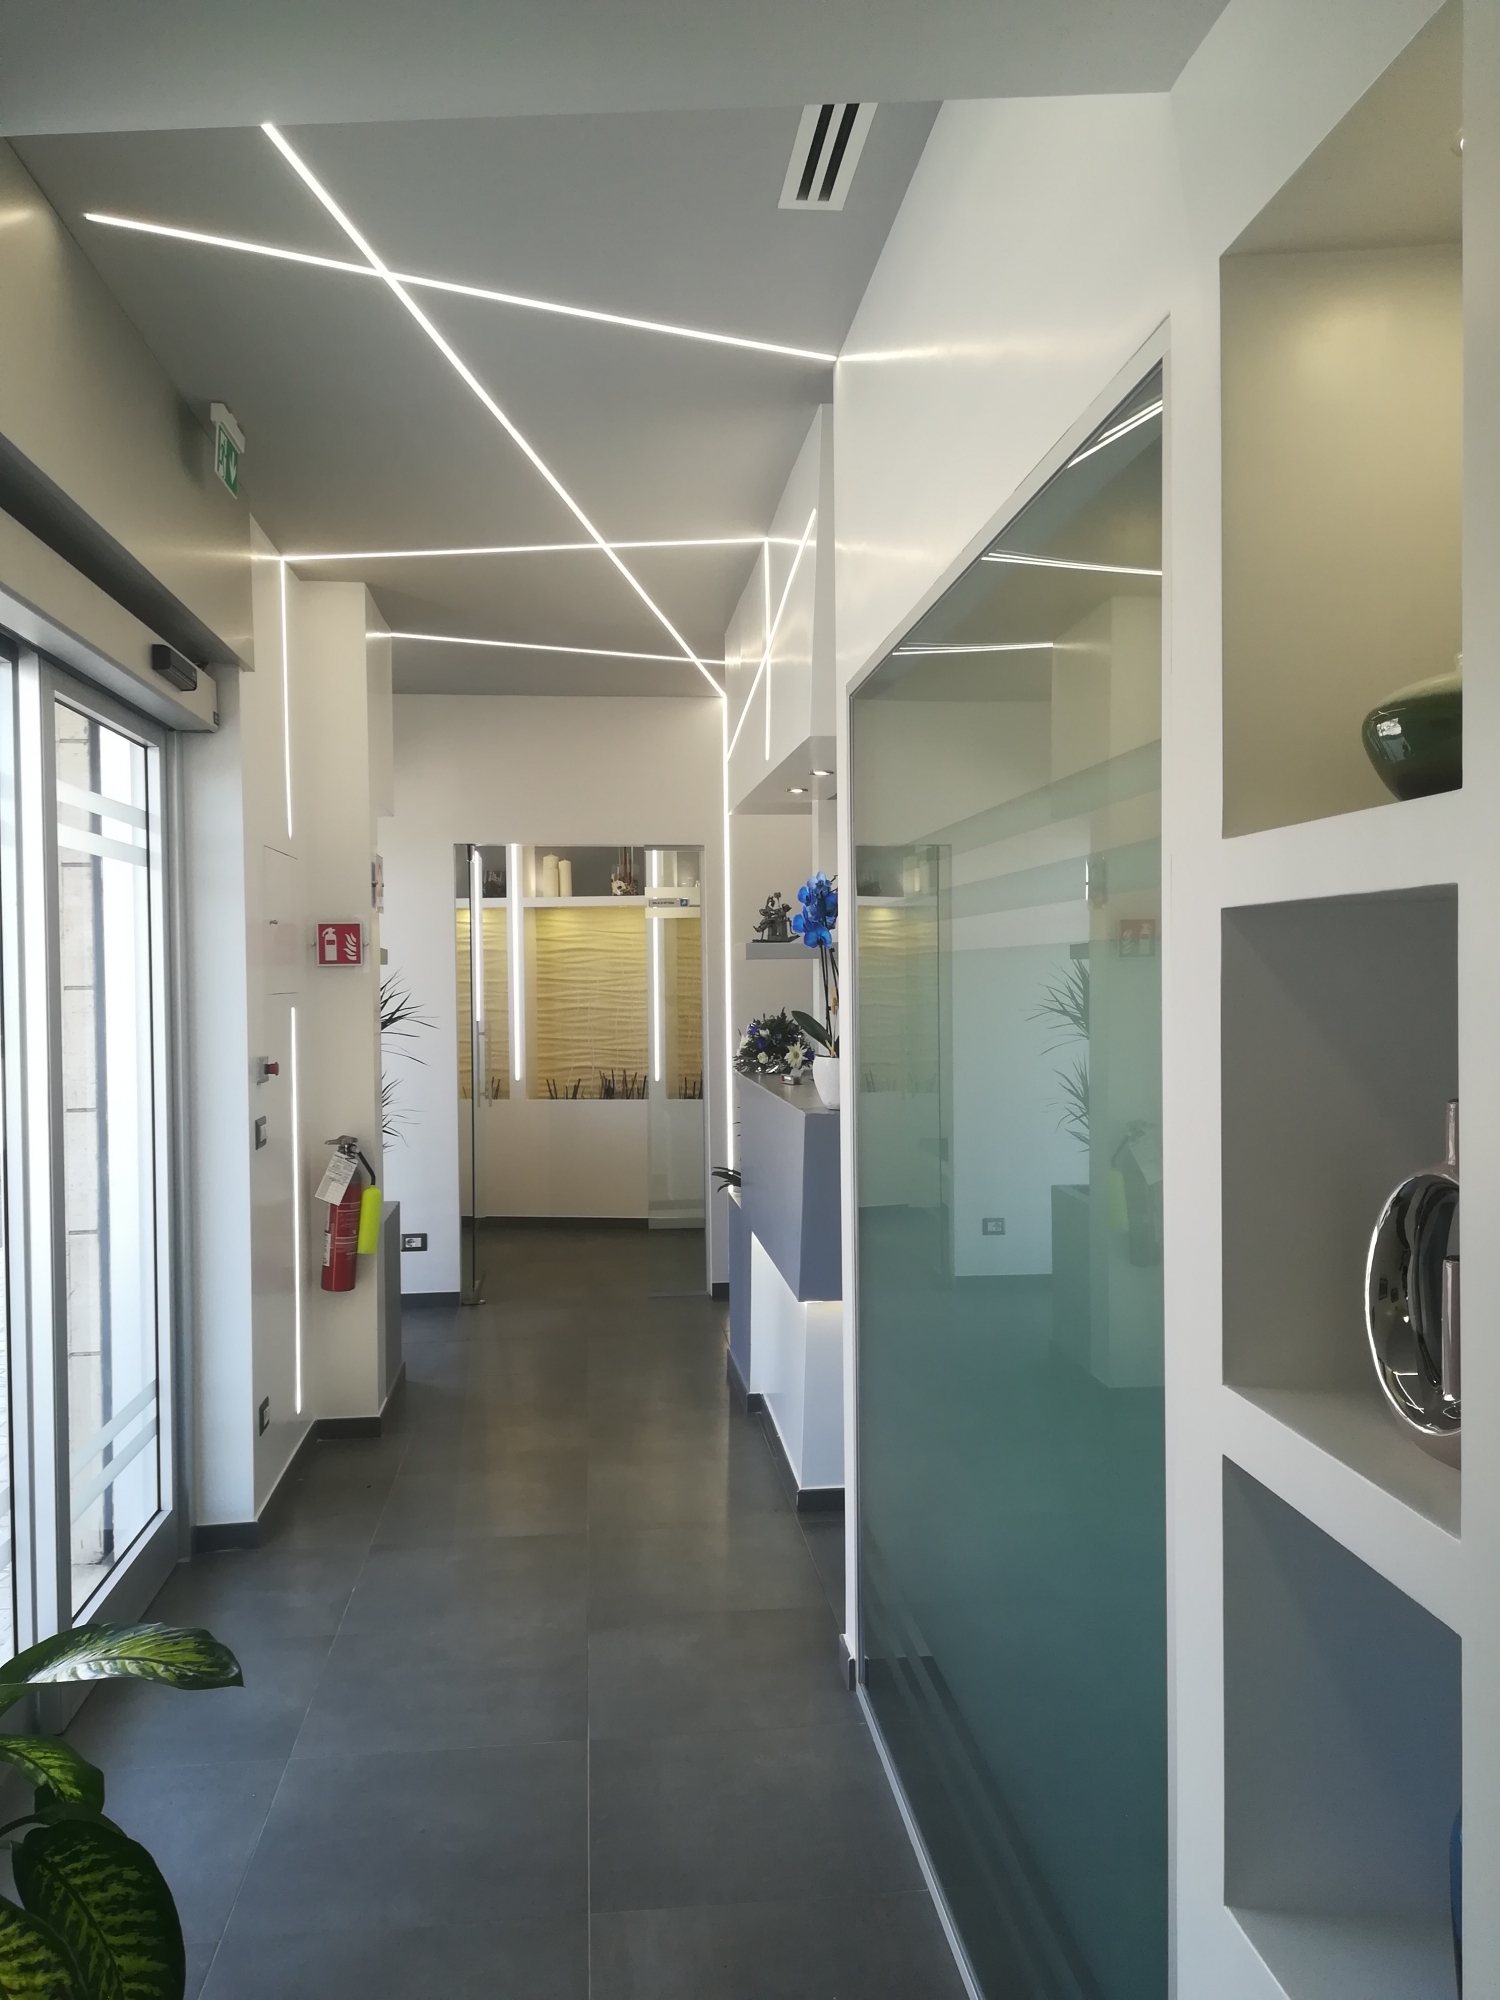 Ingresso - studio odontoiatrico progetto - Architetto - Led - soffitto in cartongesso